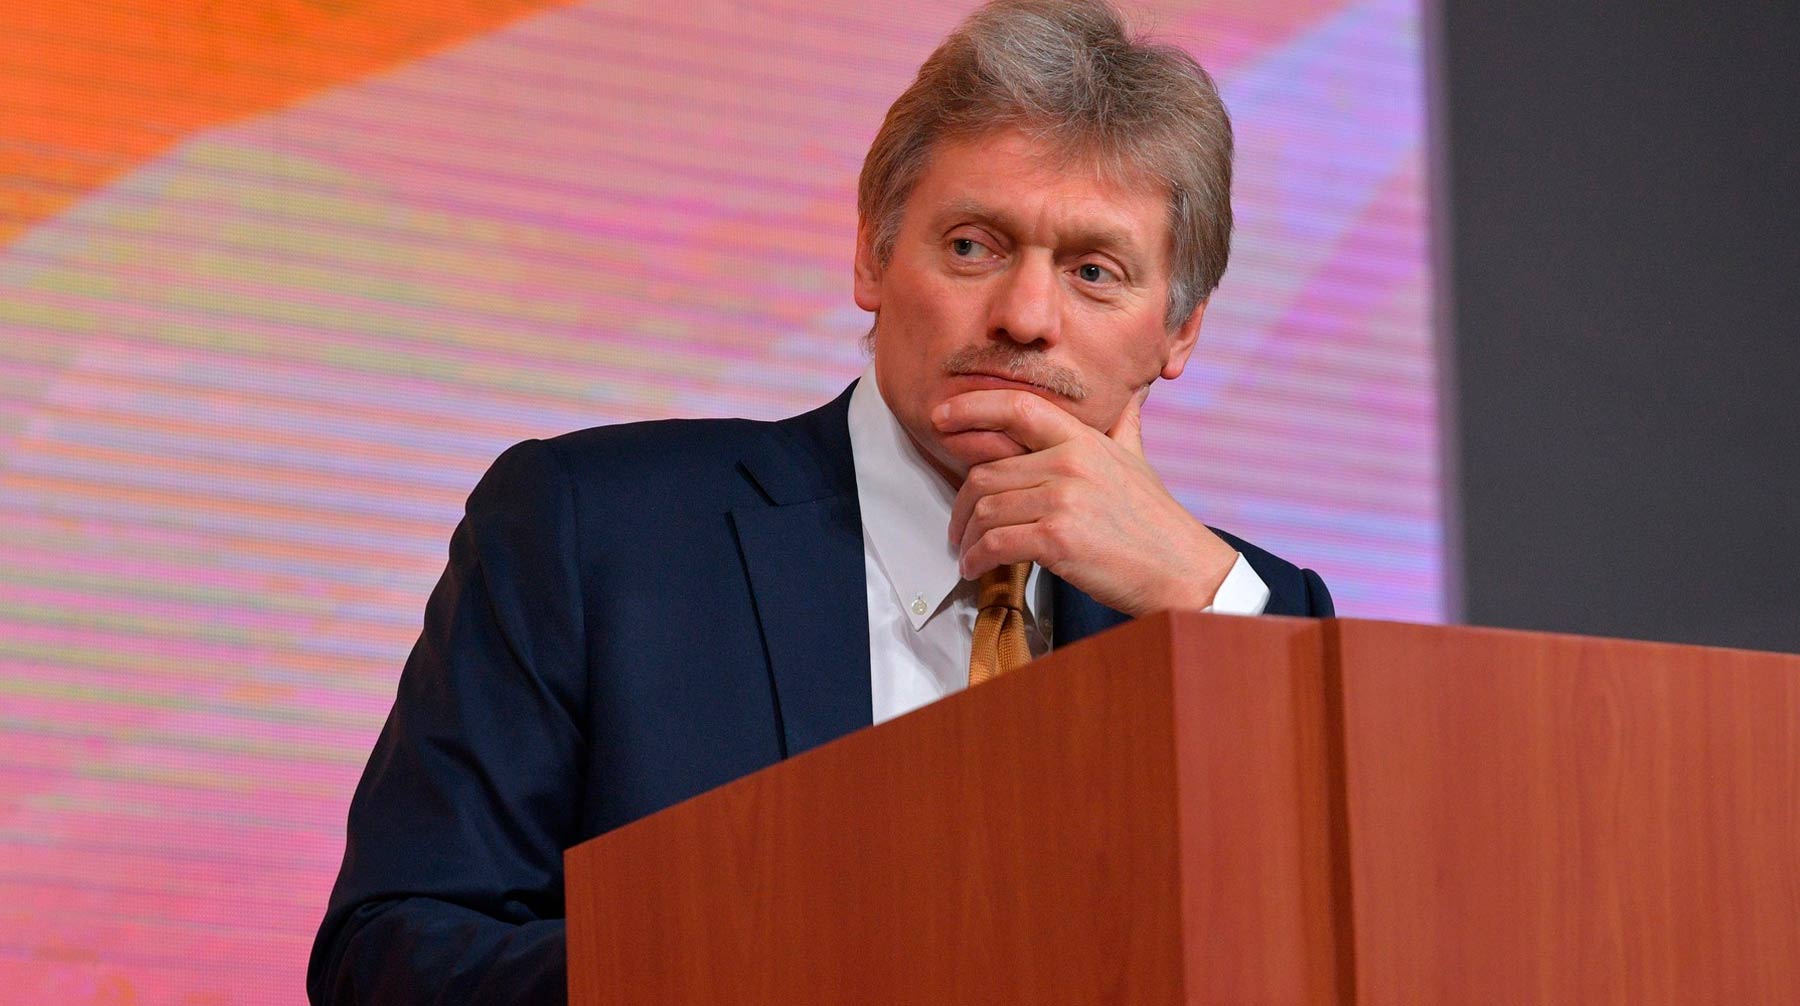 Пресс-секретарь президента РФ напомнил, что так называют предпринимателей, использующих деньги для влияния на политику Фото: © Kremlin Pool